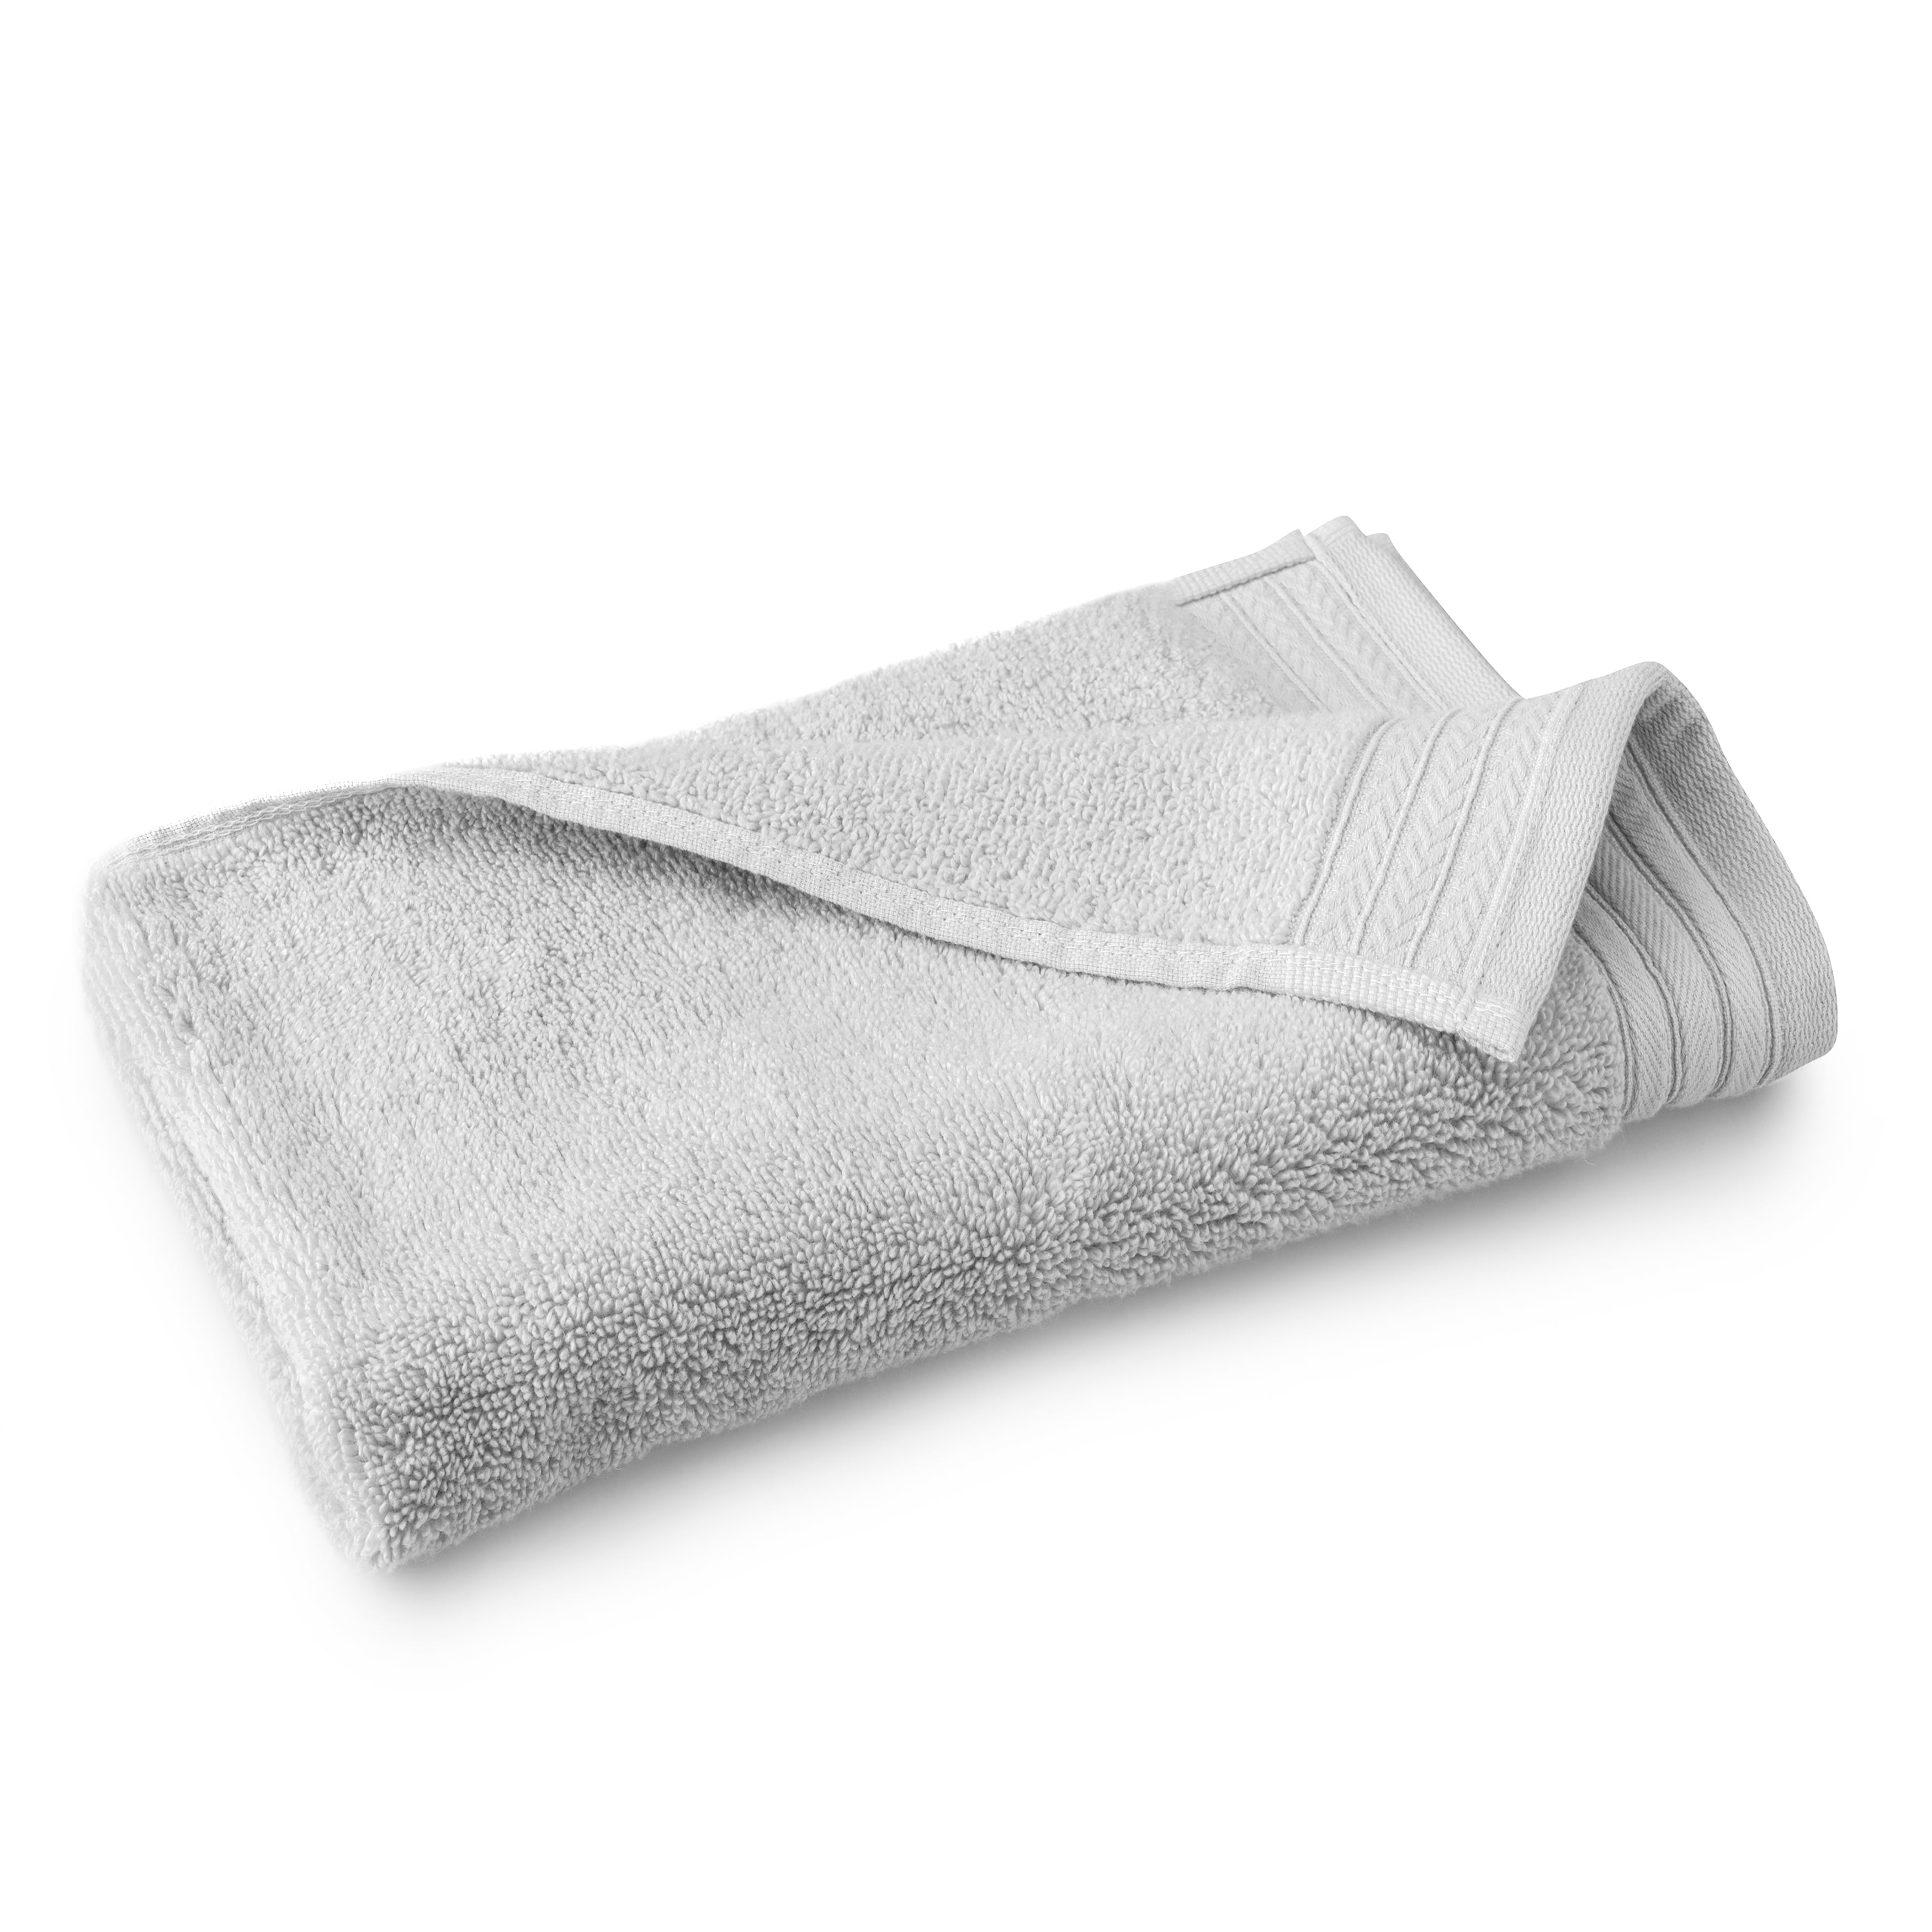 Hotel Style Egyptian Cotton Towel 10-Piece Set, White